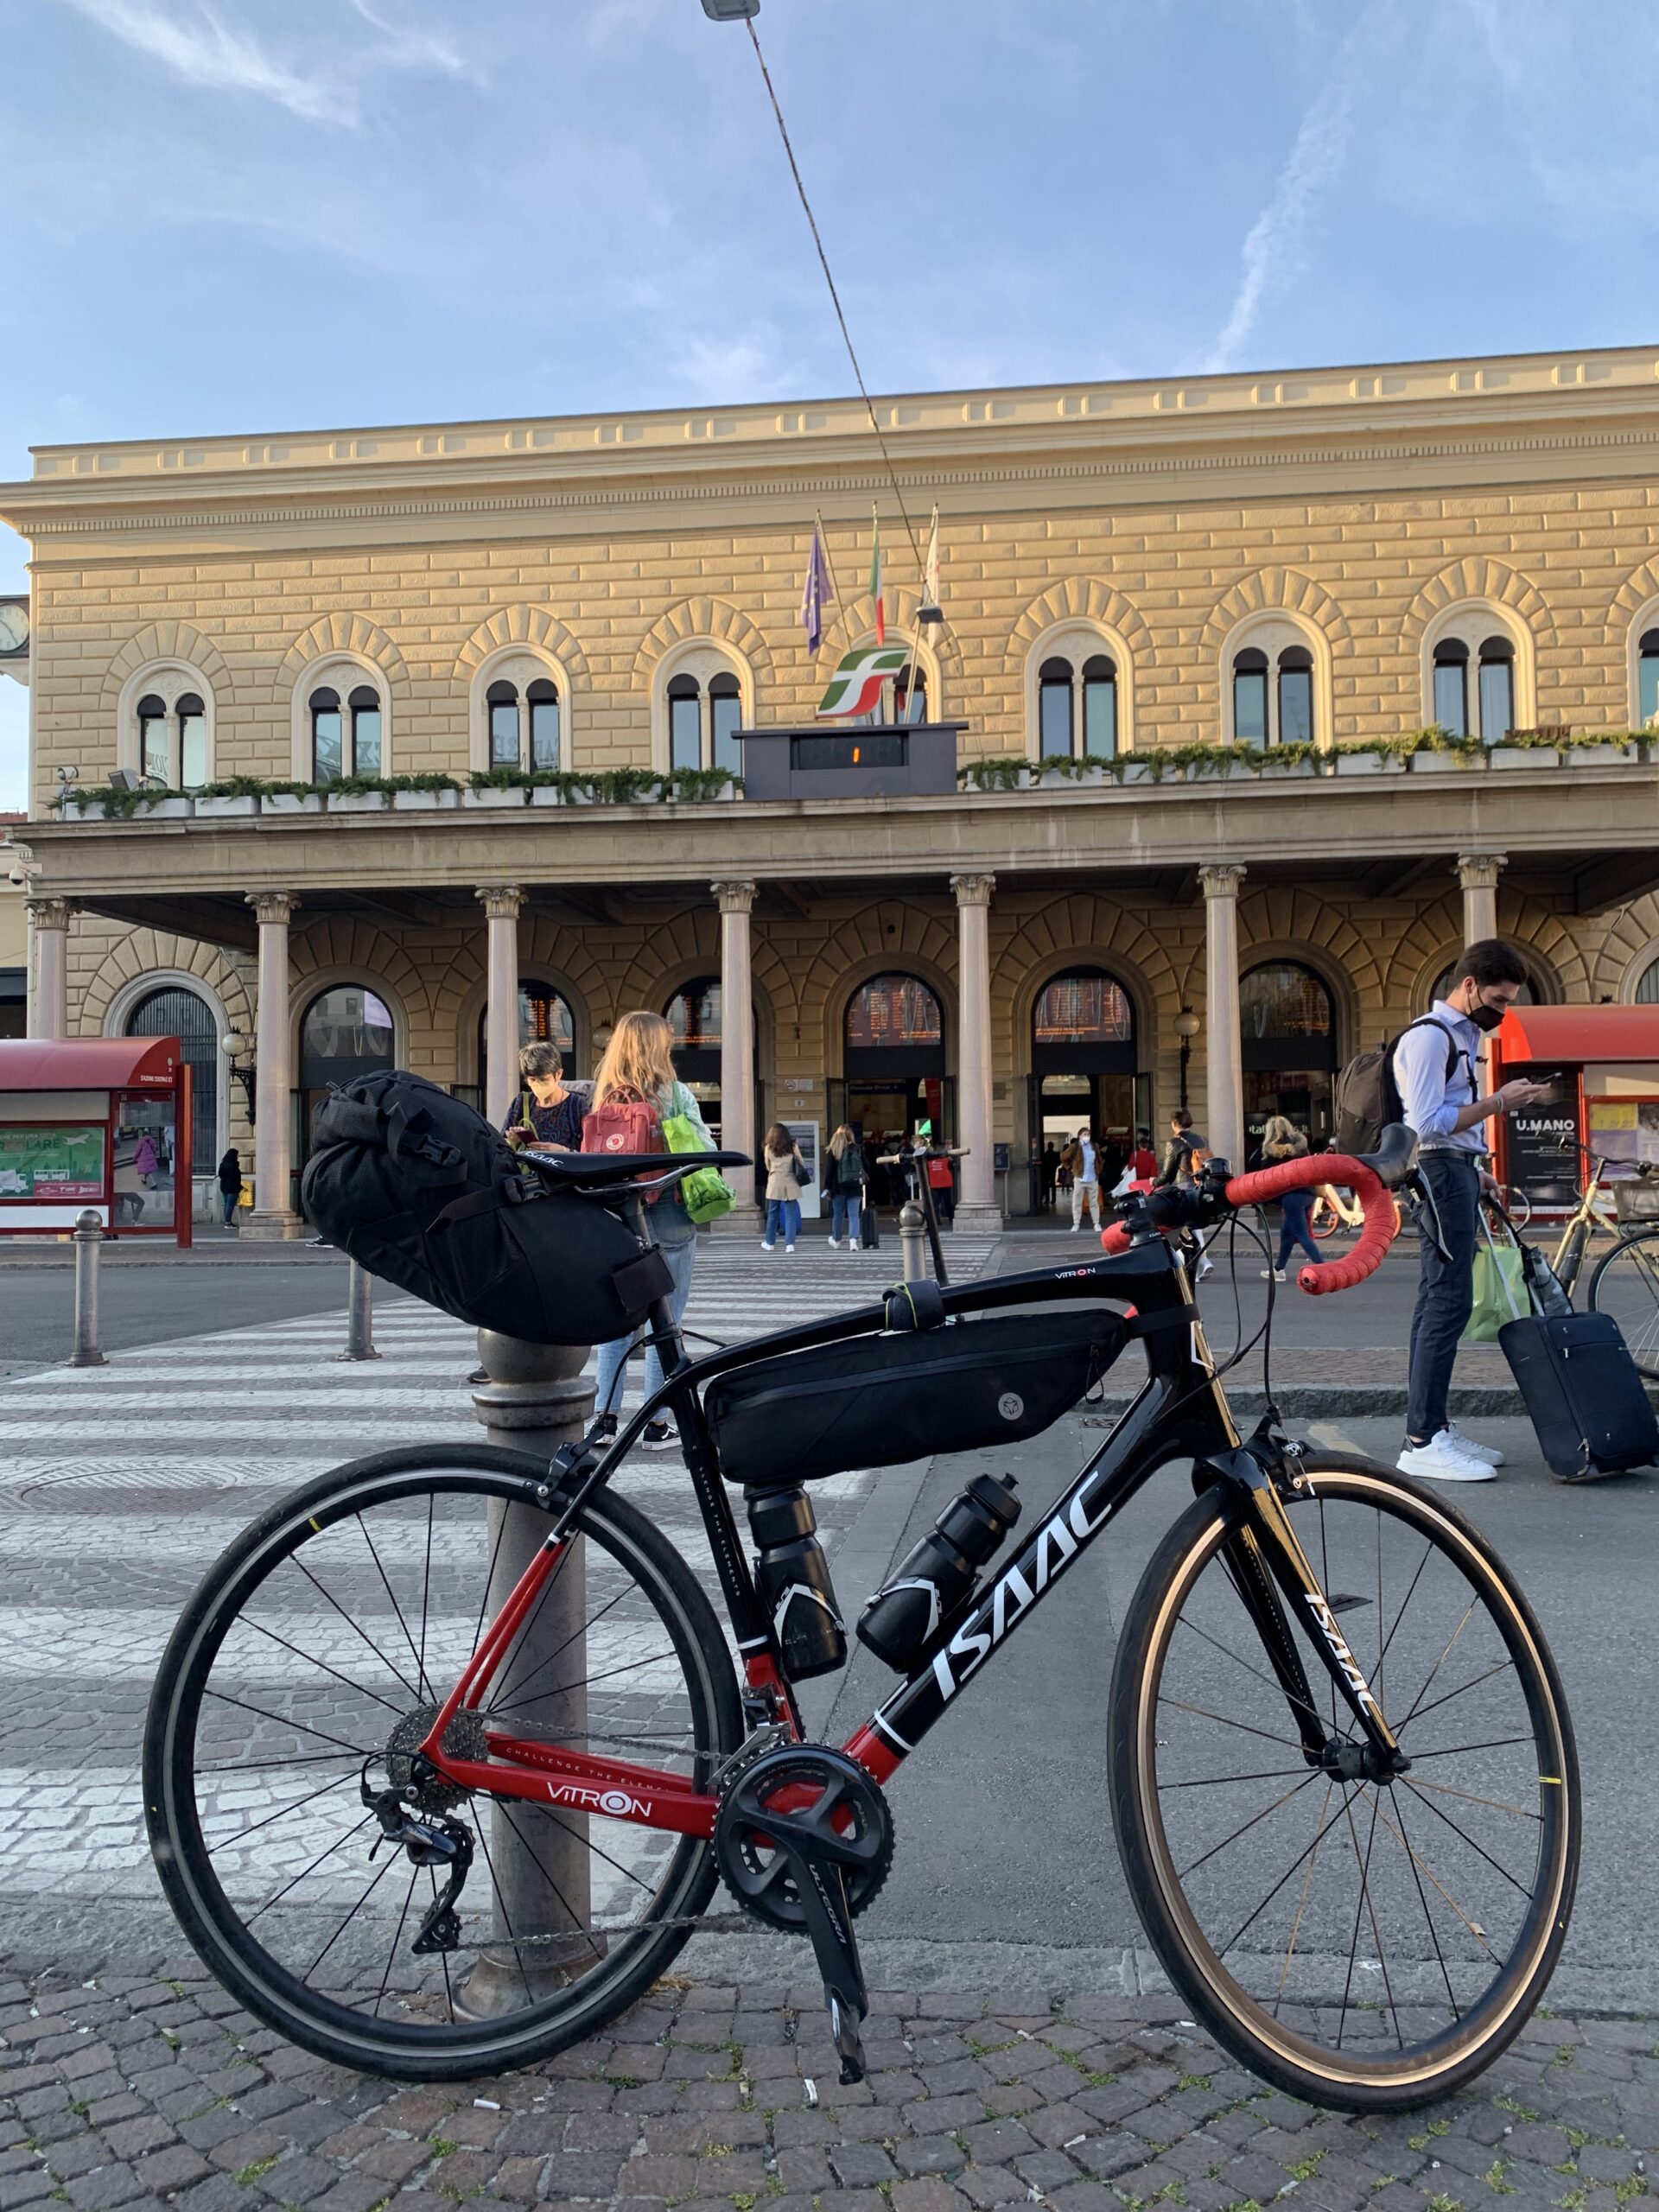 Aankomst in Bologna met racefiets voor het treinstation Bologna in Italië.